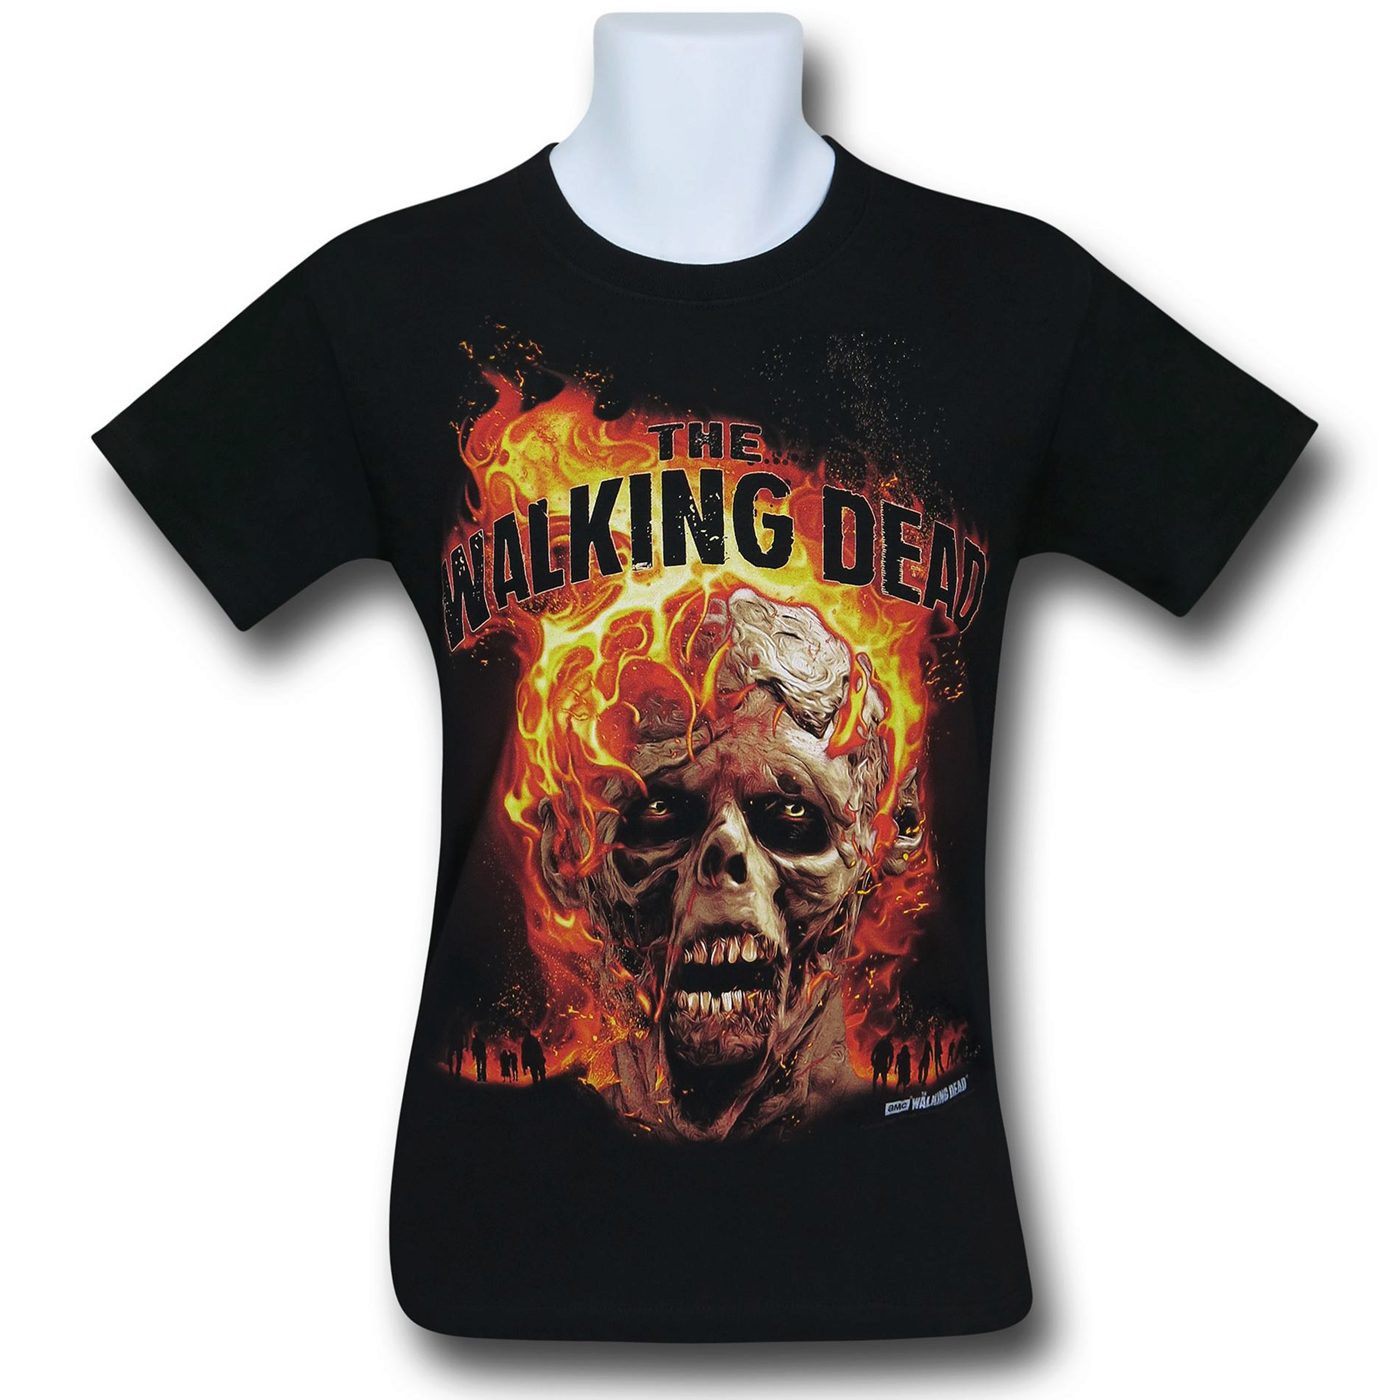 Walking Dead Face Melter T-Shirt